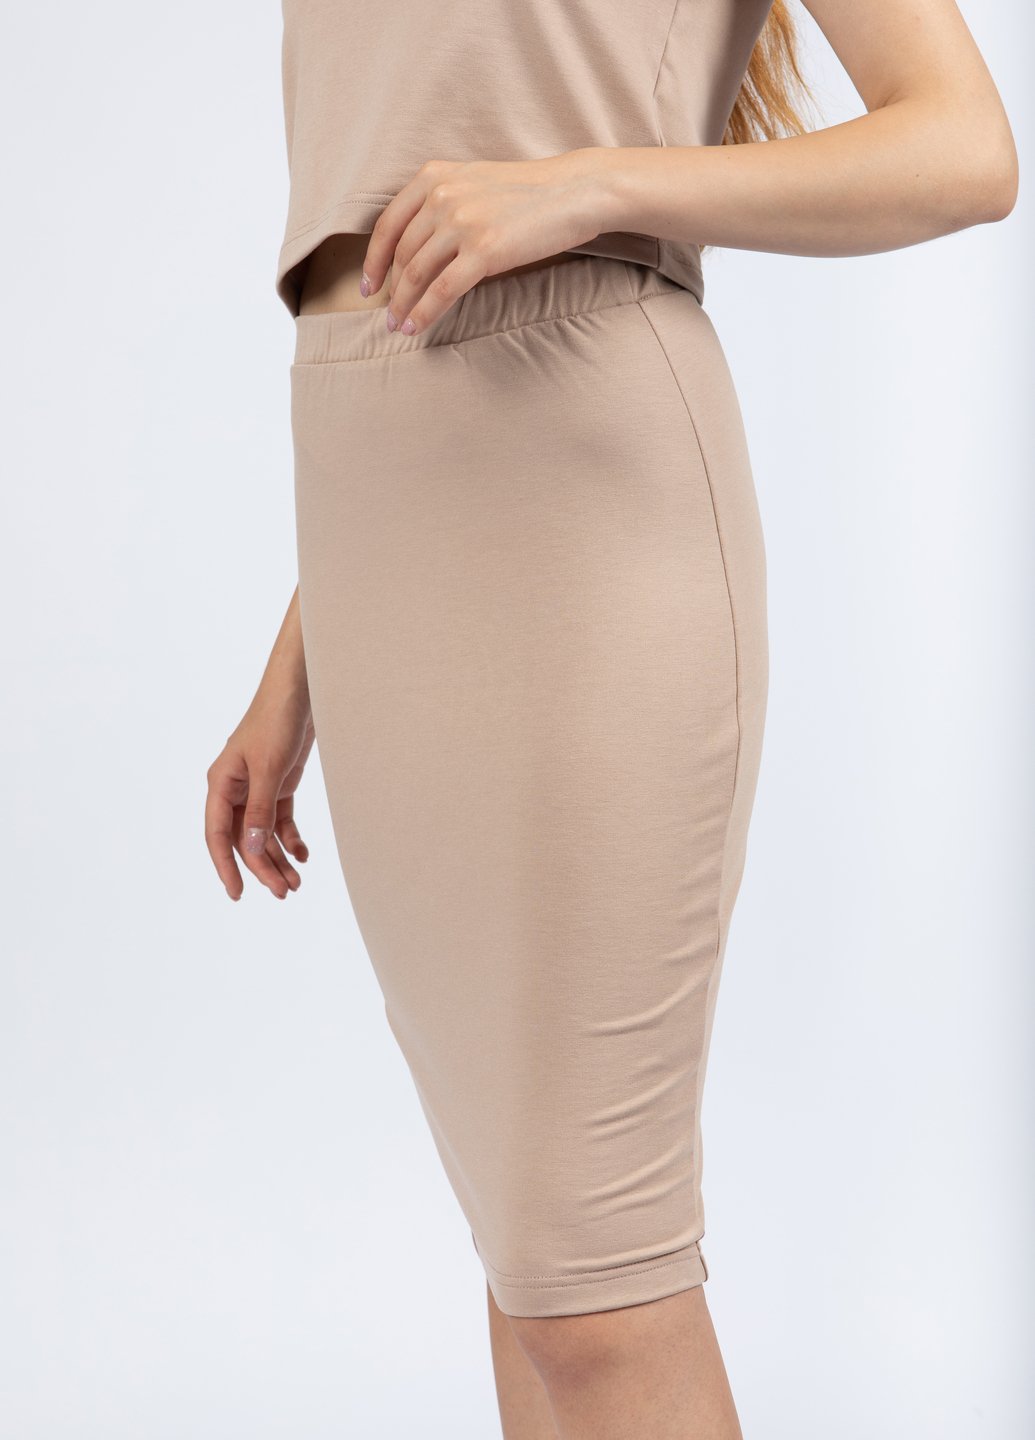 Купить Миди юбка Merlini Пассаж 400000015 - Бежевый, 42 в интернет-магазине